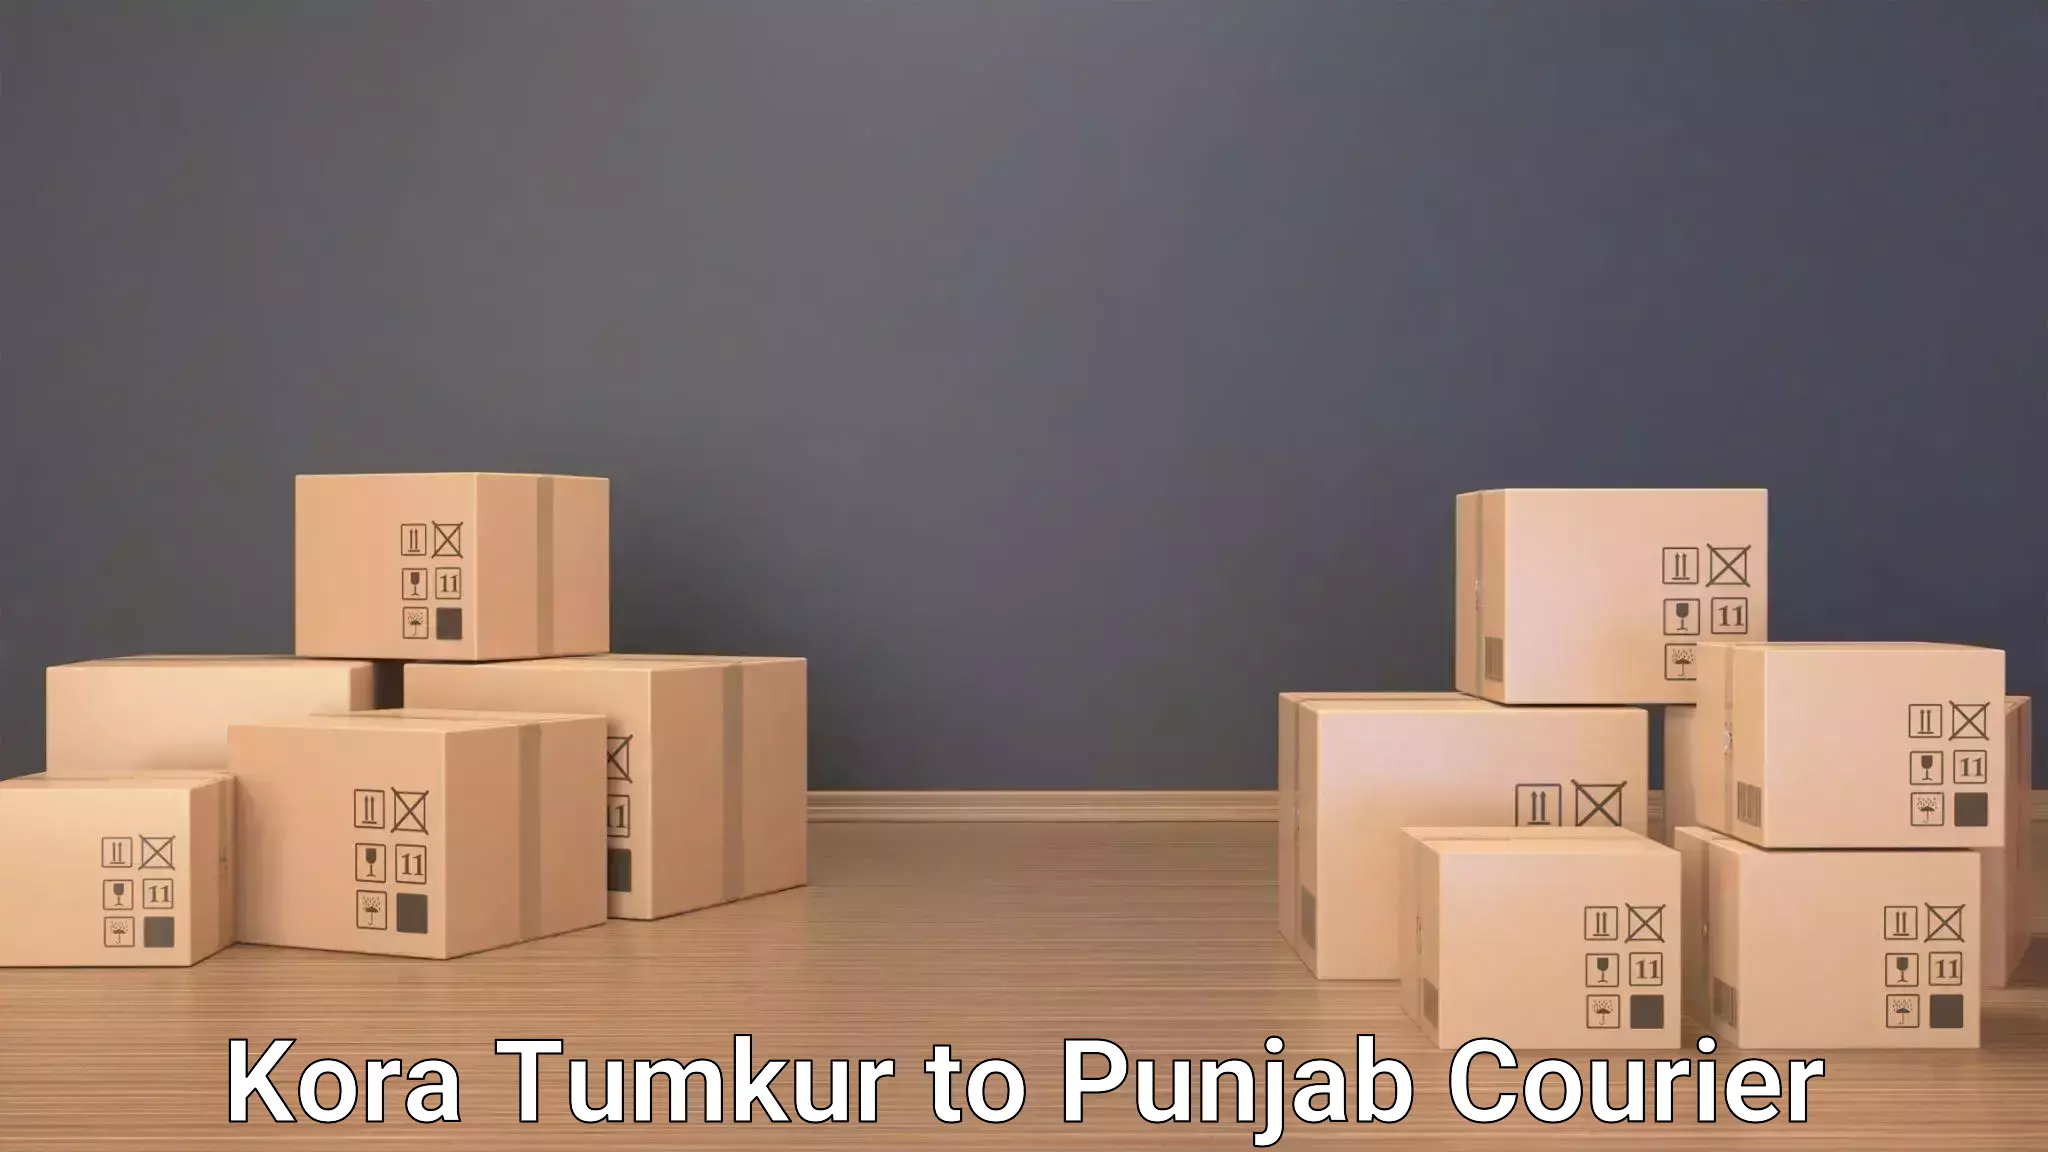 Luggage shipment strategy Kora Tumkur to Central University of Punjab Bathinda